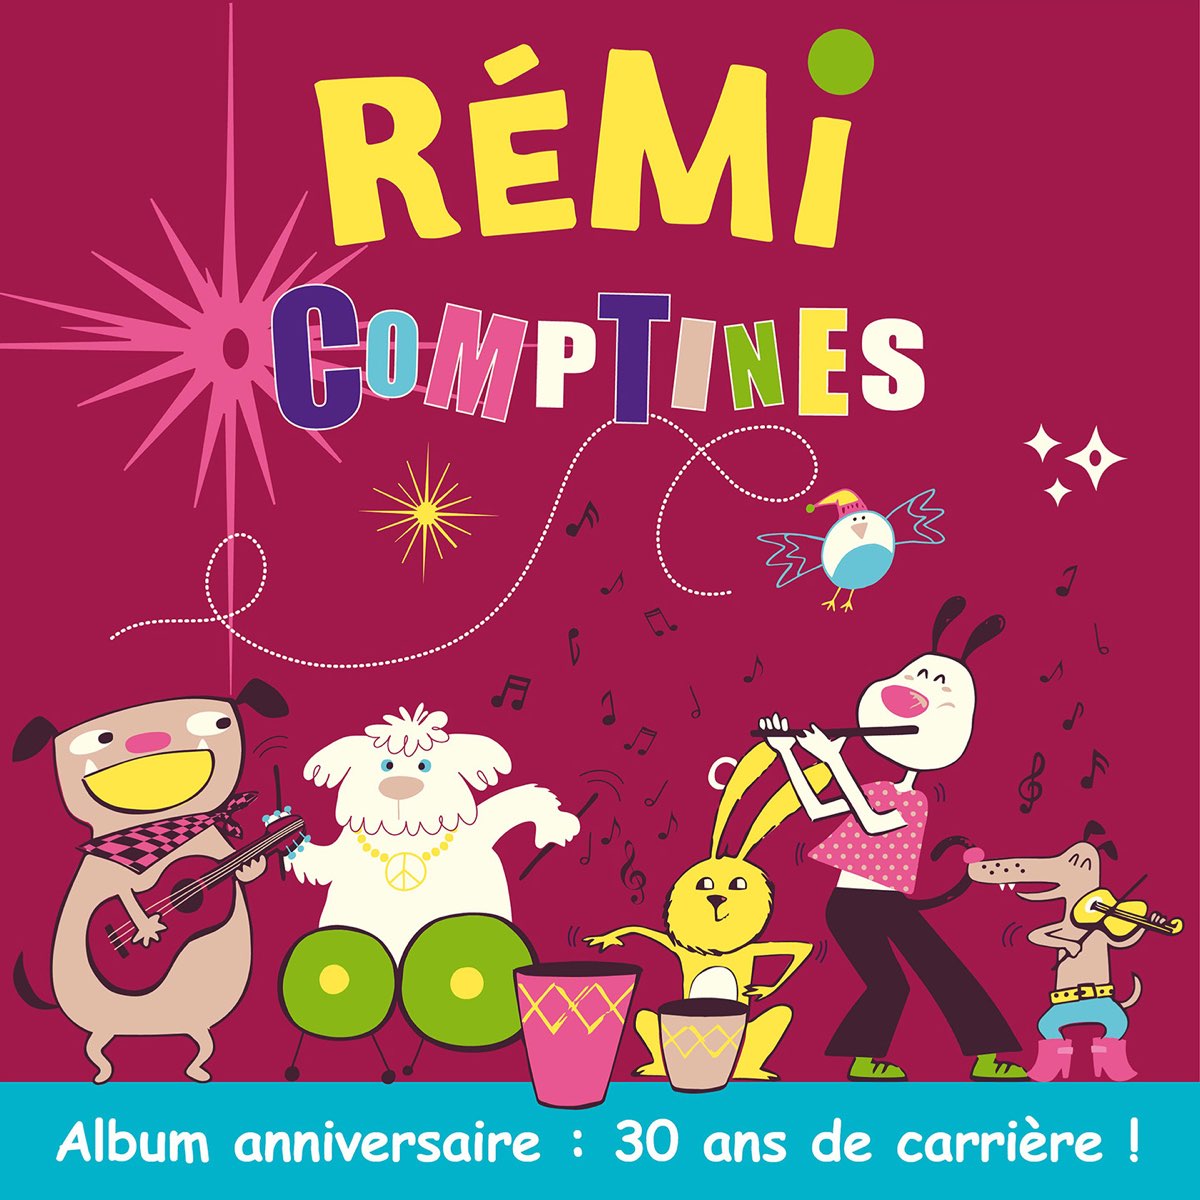 Le nouveau livre musical de REMI, pour fêter 30 ans de carrière !!!